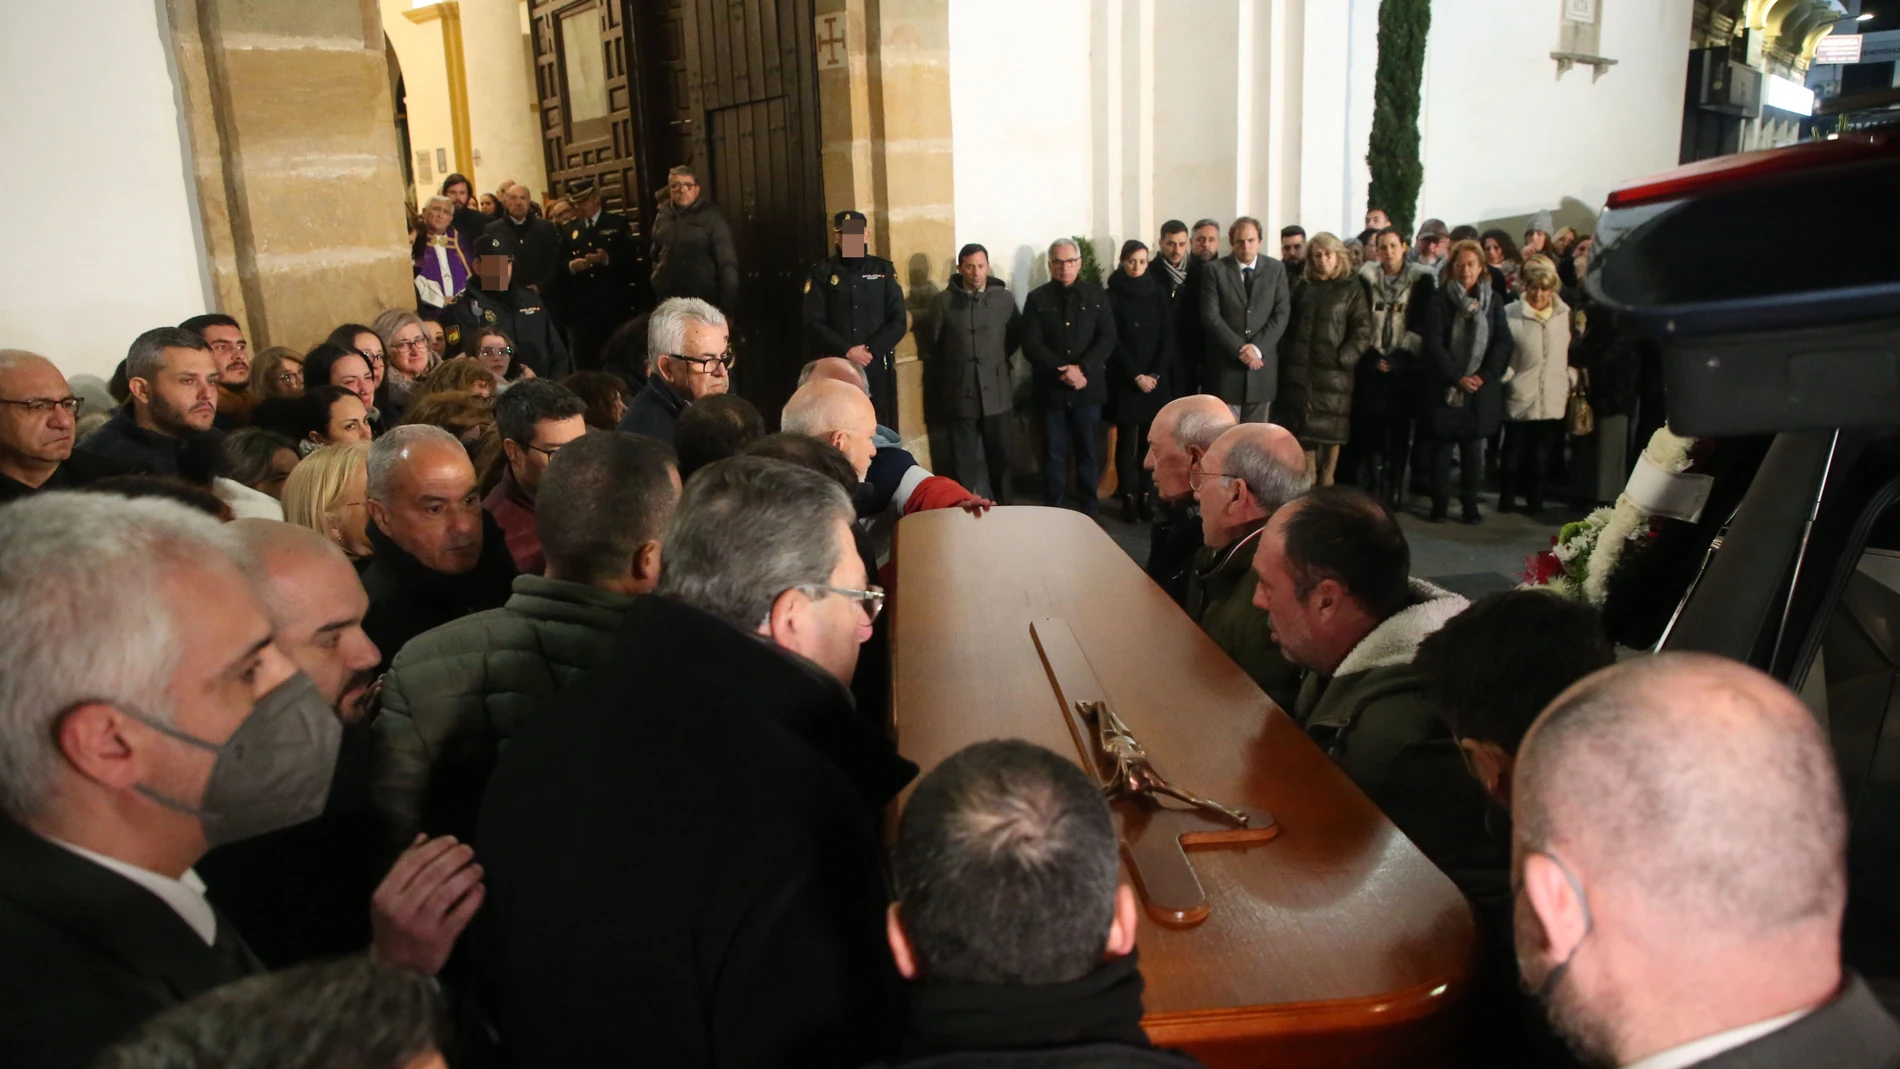 El féretro de Diego Valencia, el sacristán asesinado en Algeciras, llega a la Iglesia de Nuestra Señora de La Palma. Nono Rico